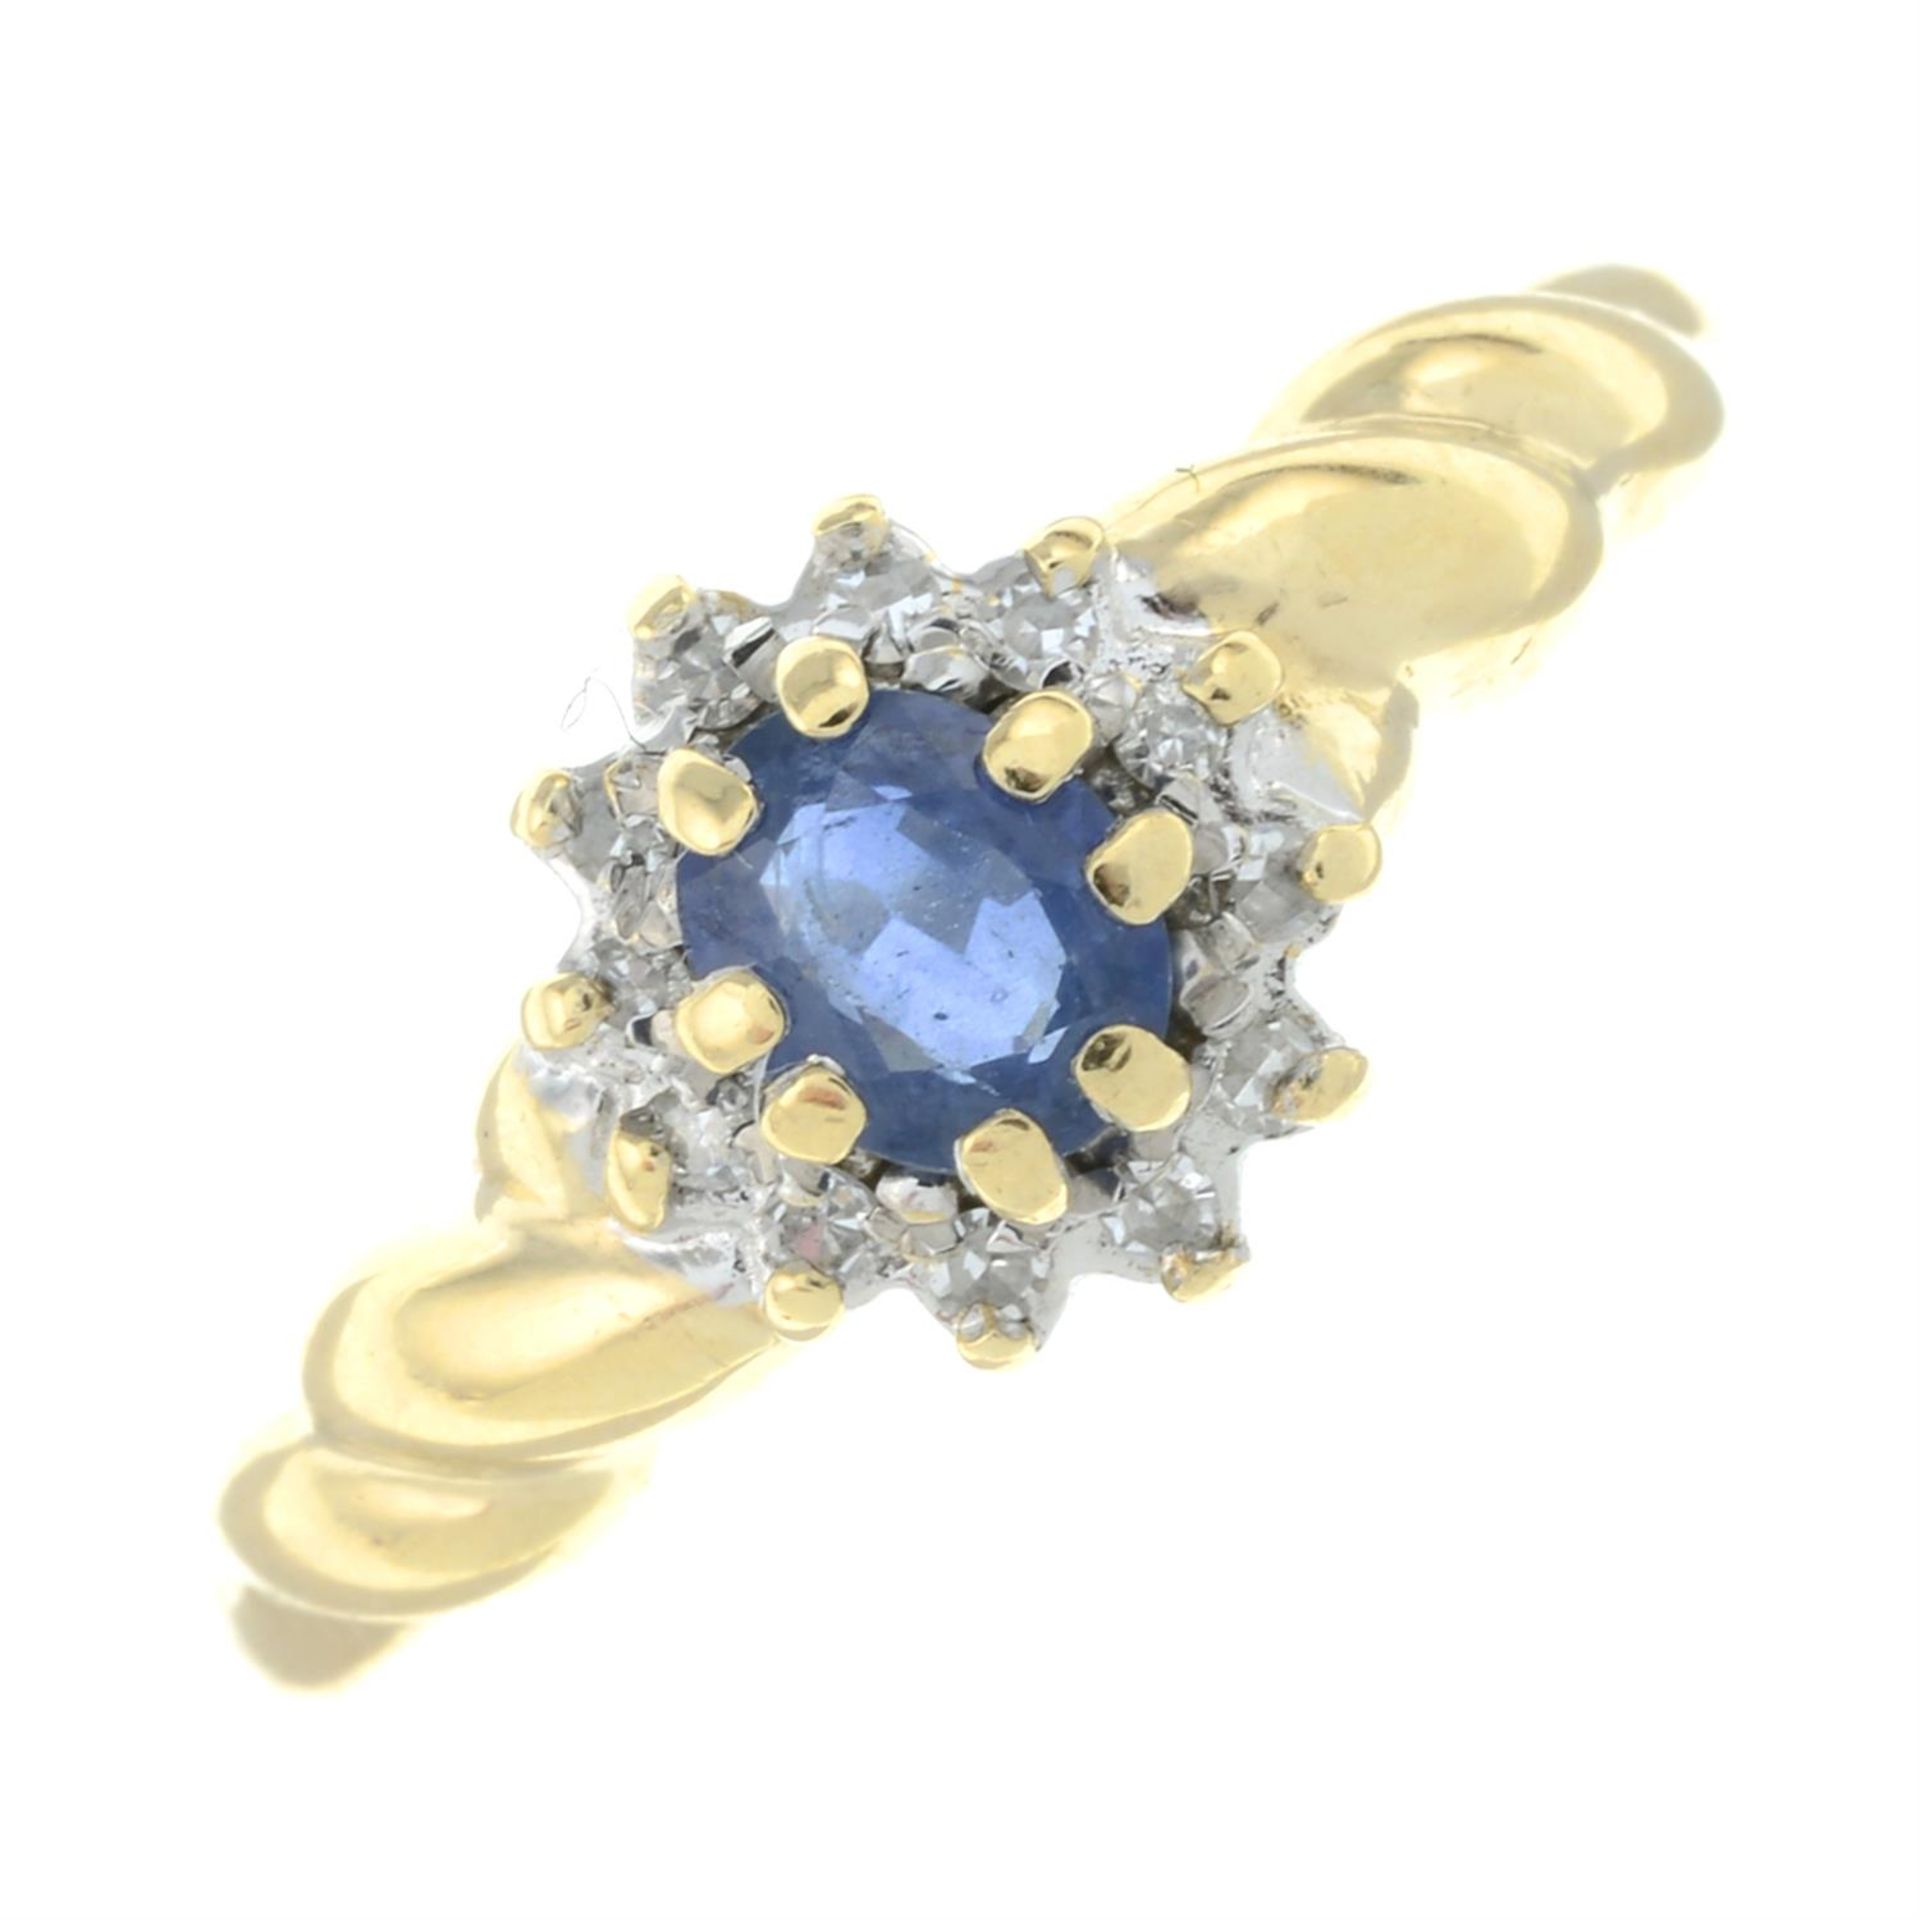 9ct gold sapphire & diamond ring